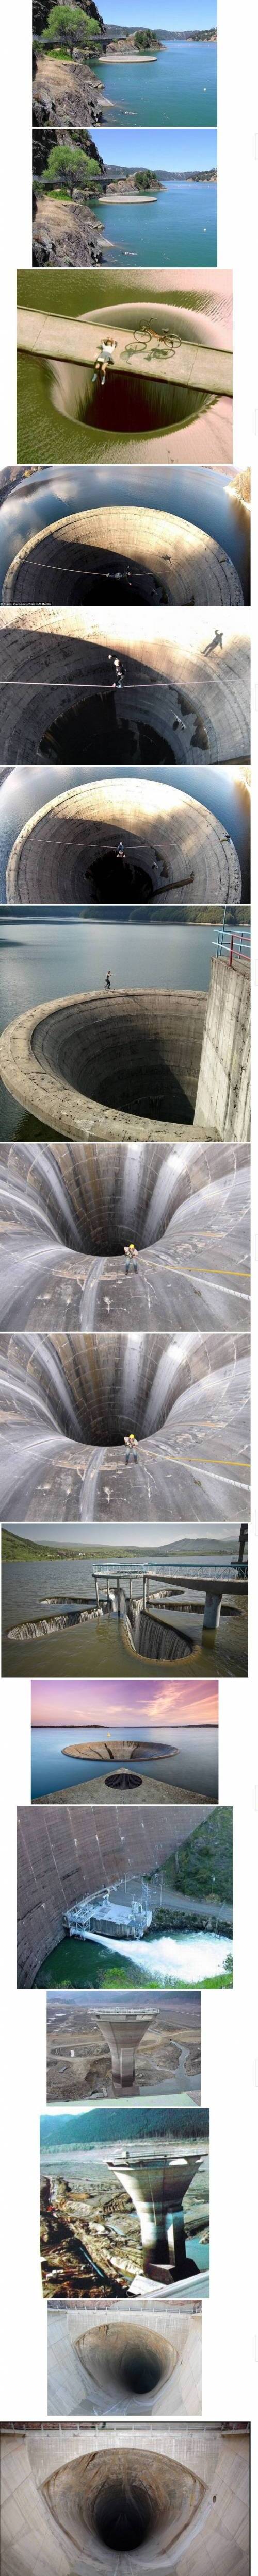 댐 수위조절 구멍.jpg